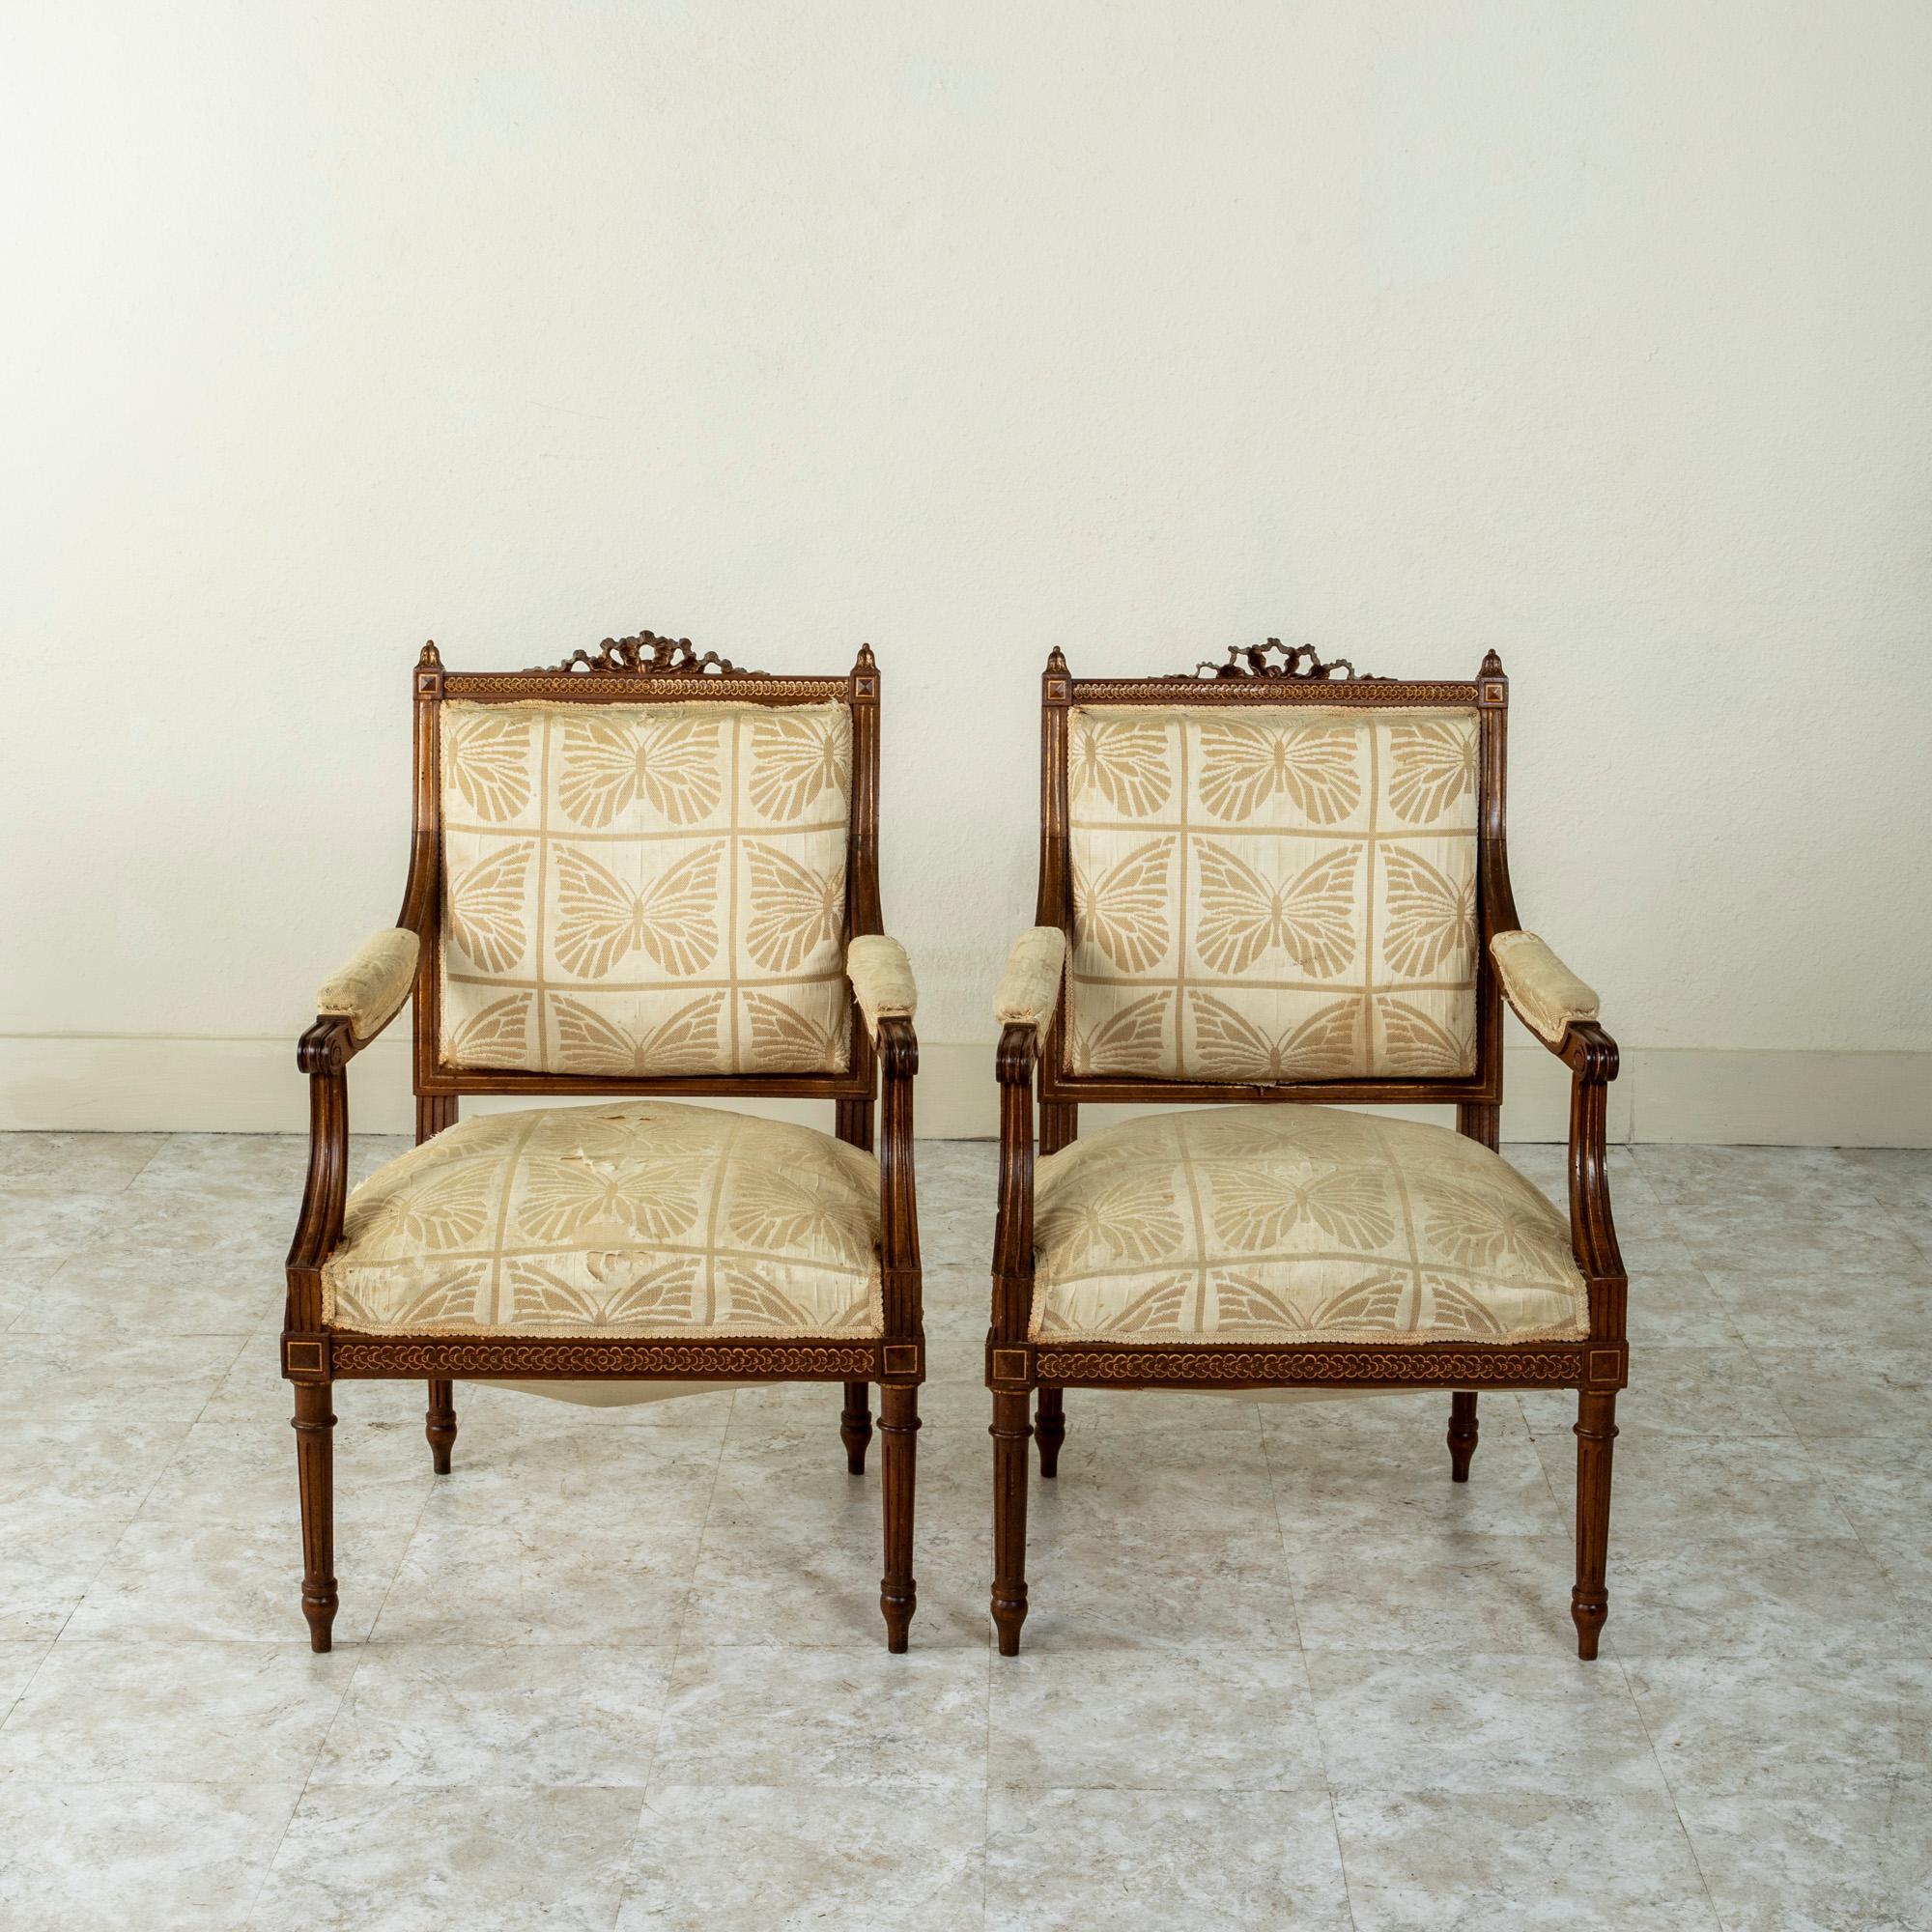 Cette paire de fauteuils en noyer de style Louis XVI de la fin du XIXe siècle, sculptés à la main, est ornée d'un ruban central noué au sommet du dossier et de fleurons en forme de feuilles d'acanthe. Les chaises sont également ornées d'un motif